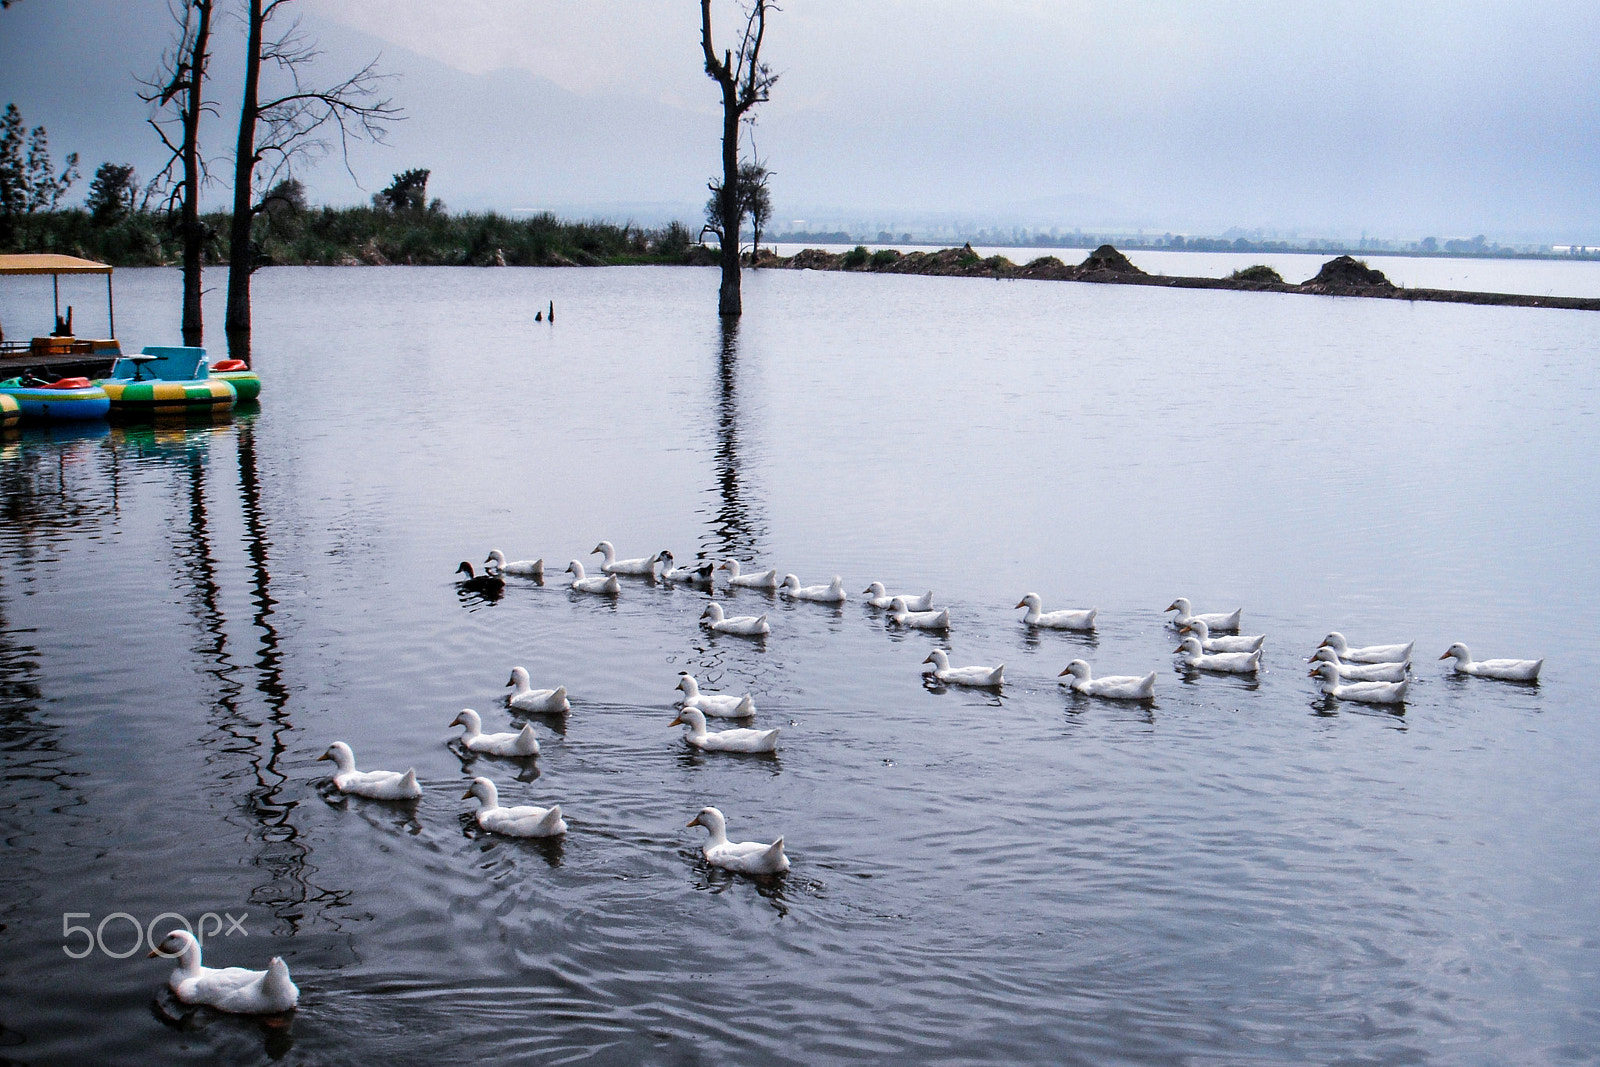 FujiFilm FinePix Z70 (FinePix Z71) sample photo. Ducks swimming in zapotlan's lake photography